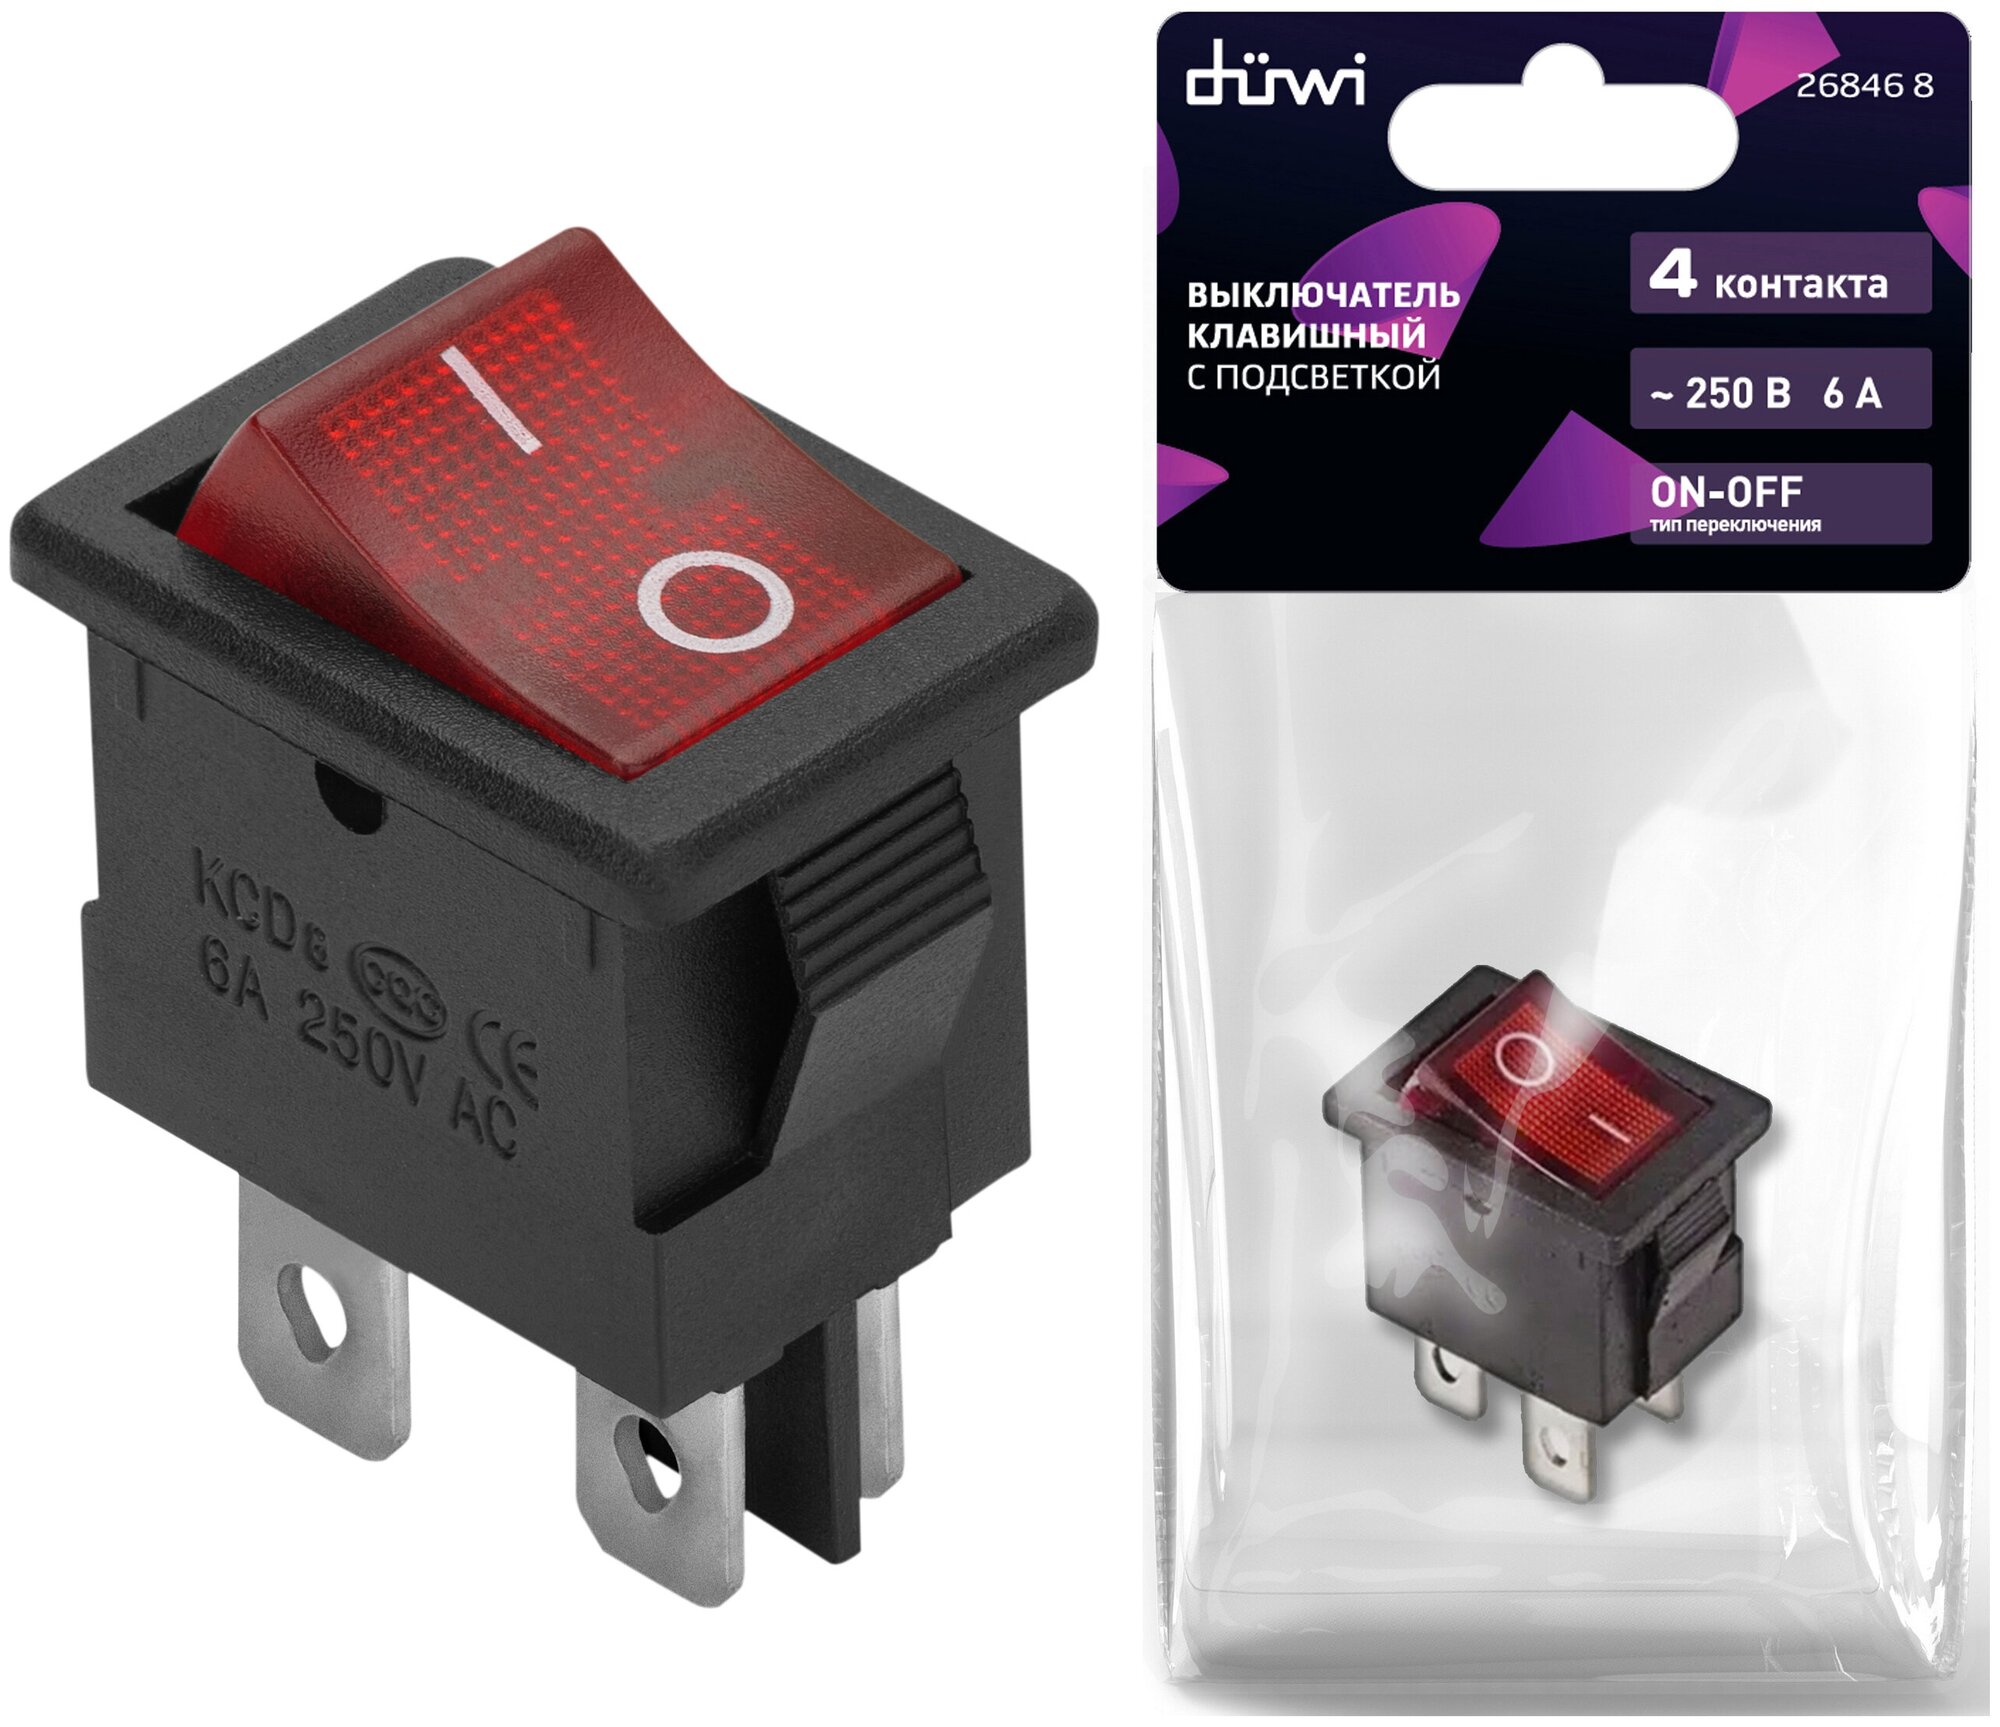 Выключатель клавишный красный с подсветкой вкл-выкл 4 контакта 250В 6А прямоугольный duwi 26846 8